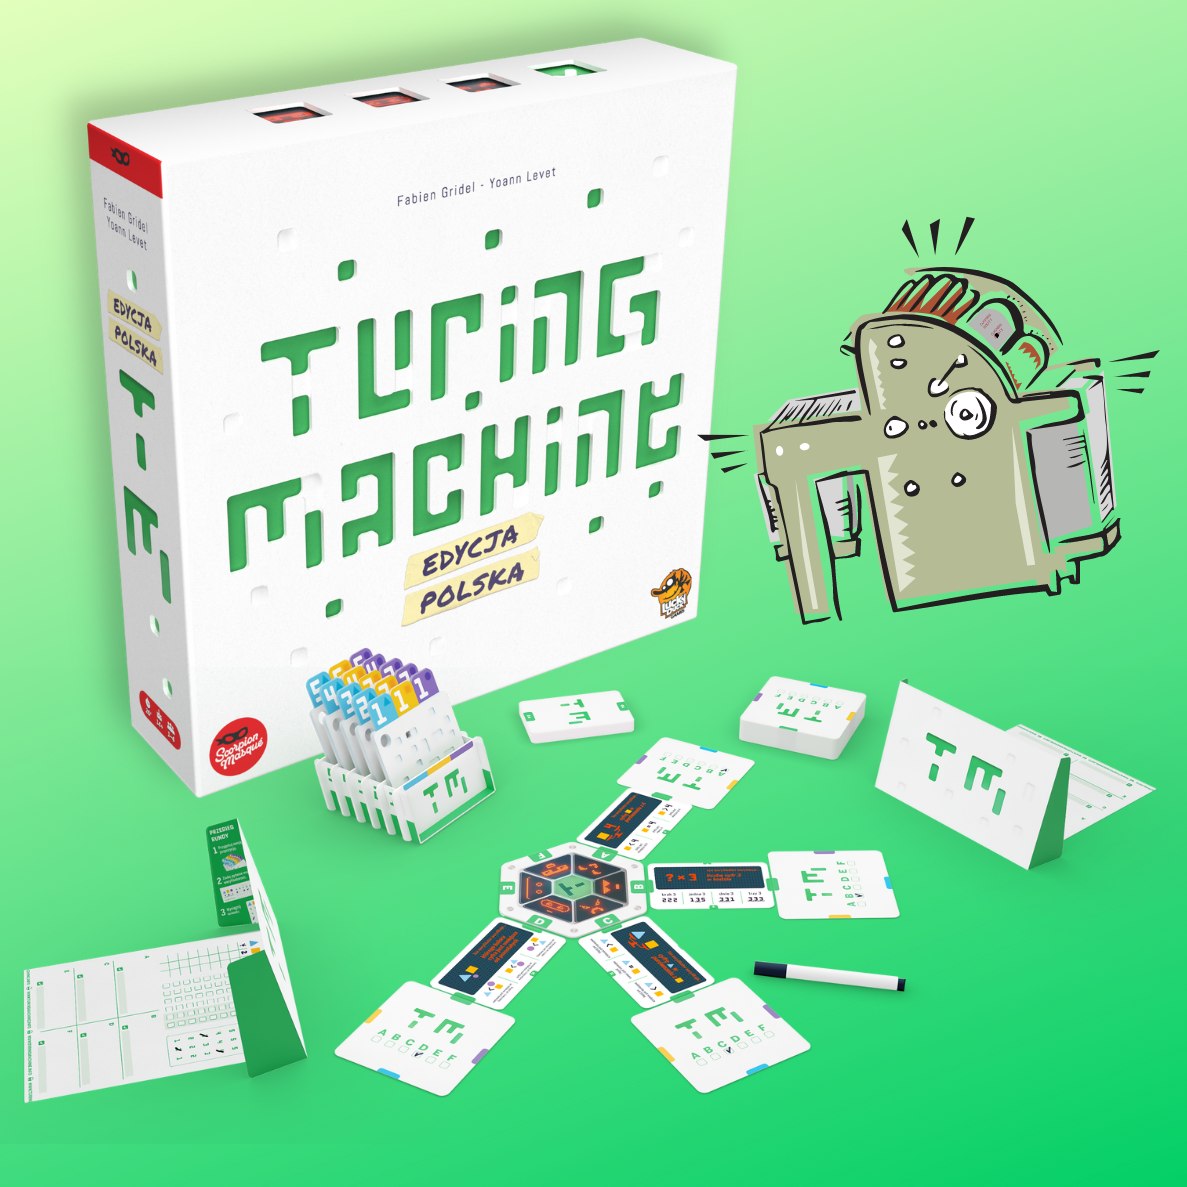 Turing Machine - pudełko i komponenty